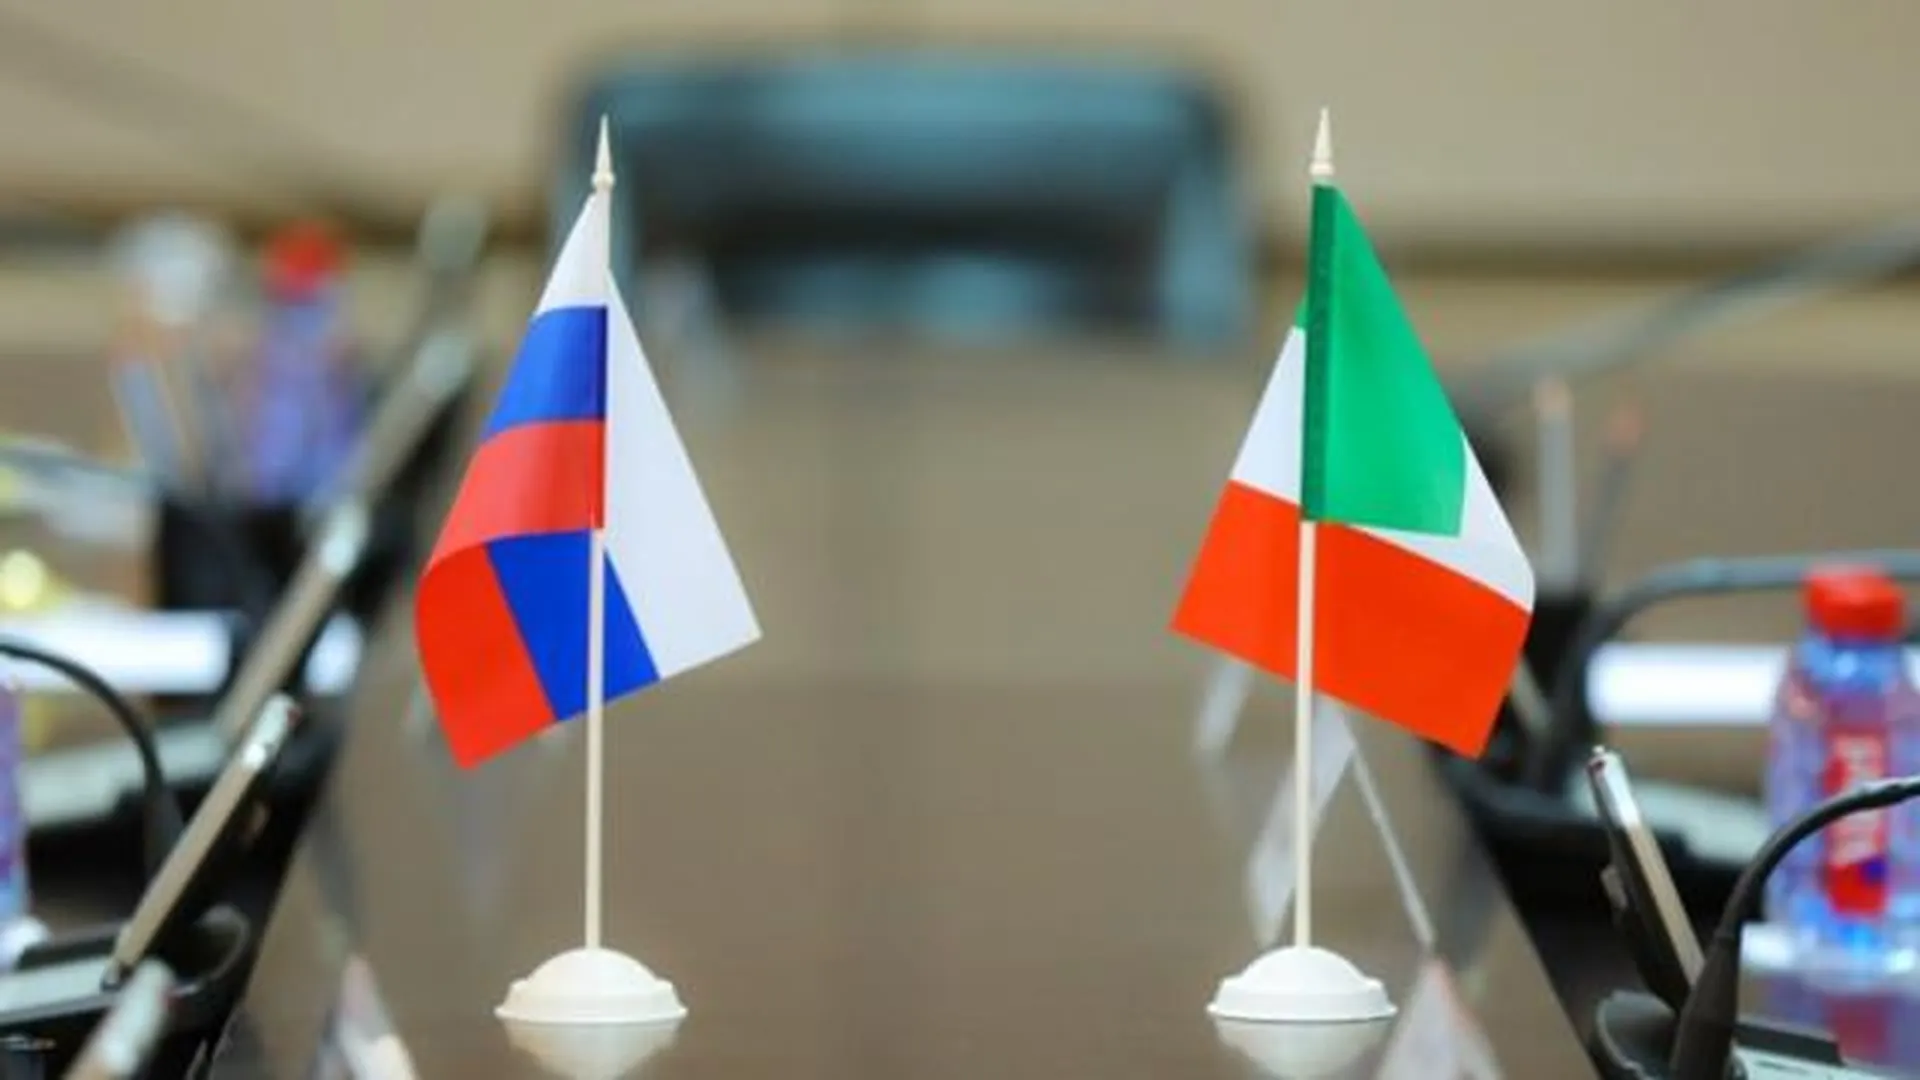 ИРТП: Россия с 14 февраля сможет покупать за рубли разрешенные товары из Италии